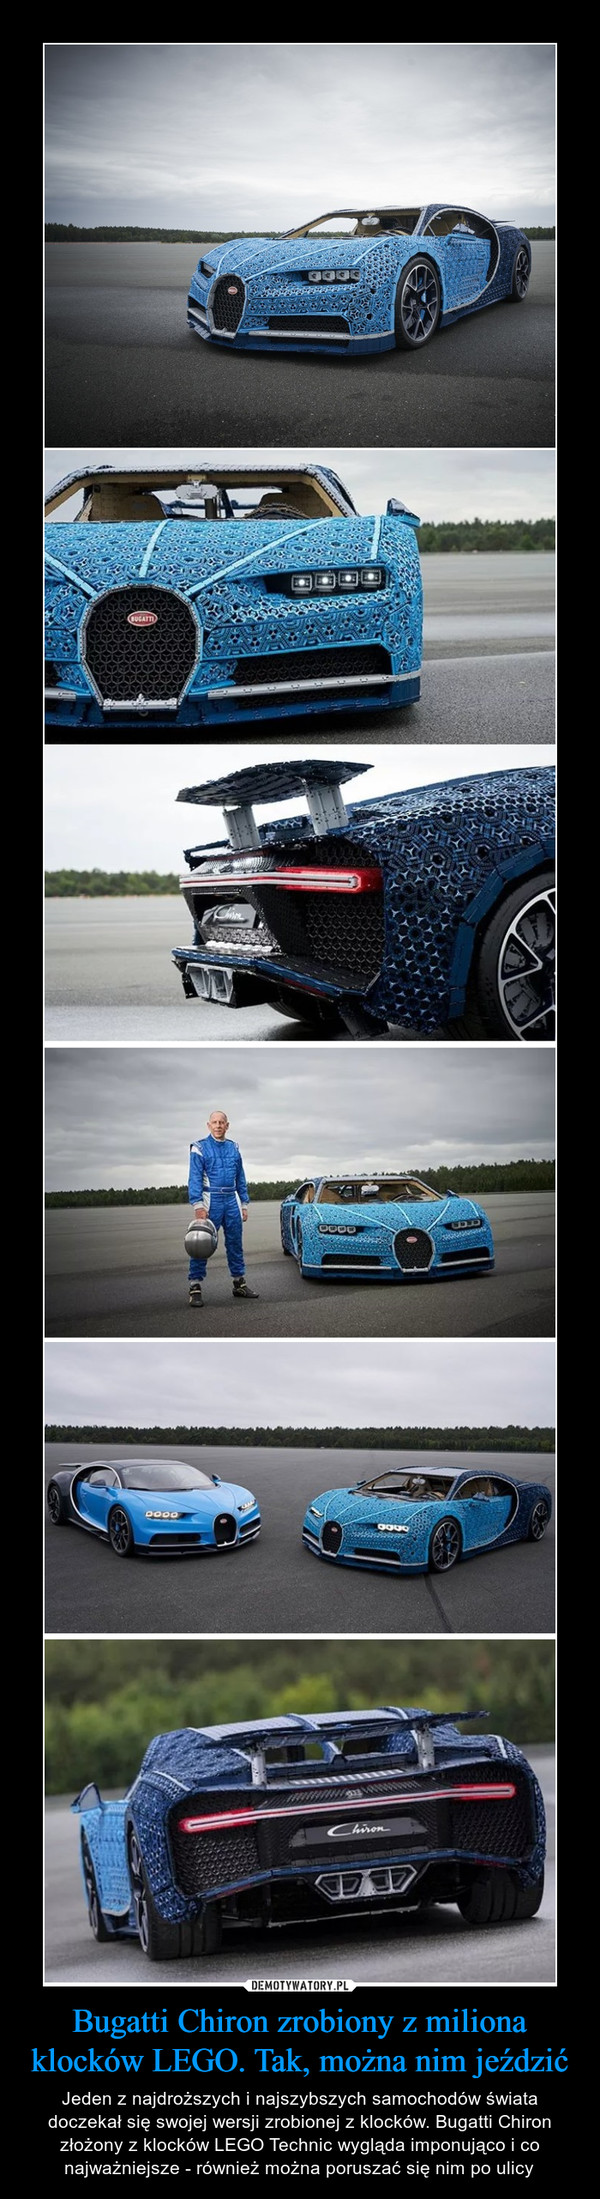 Bugatti Chiron zrobiony z miliona klocków LEGO. Tak, można nim jeździć – Jeden z najdroższych i najszybszych samochodów świata doczekał się swojej wersji zrobionej z klocków. Bugatti Chiron złożony z klocków LEGO Technic wygląda imponująco i co najważniejsze - również można poruszać się nim po ulicy 